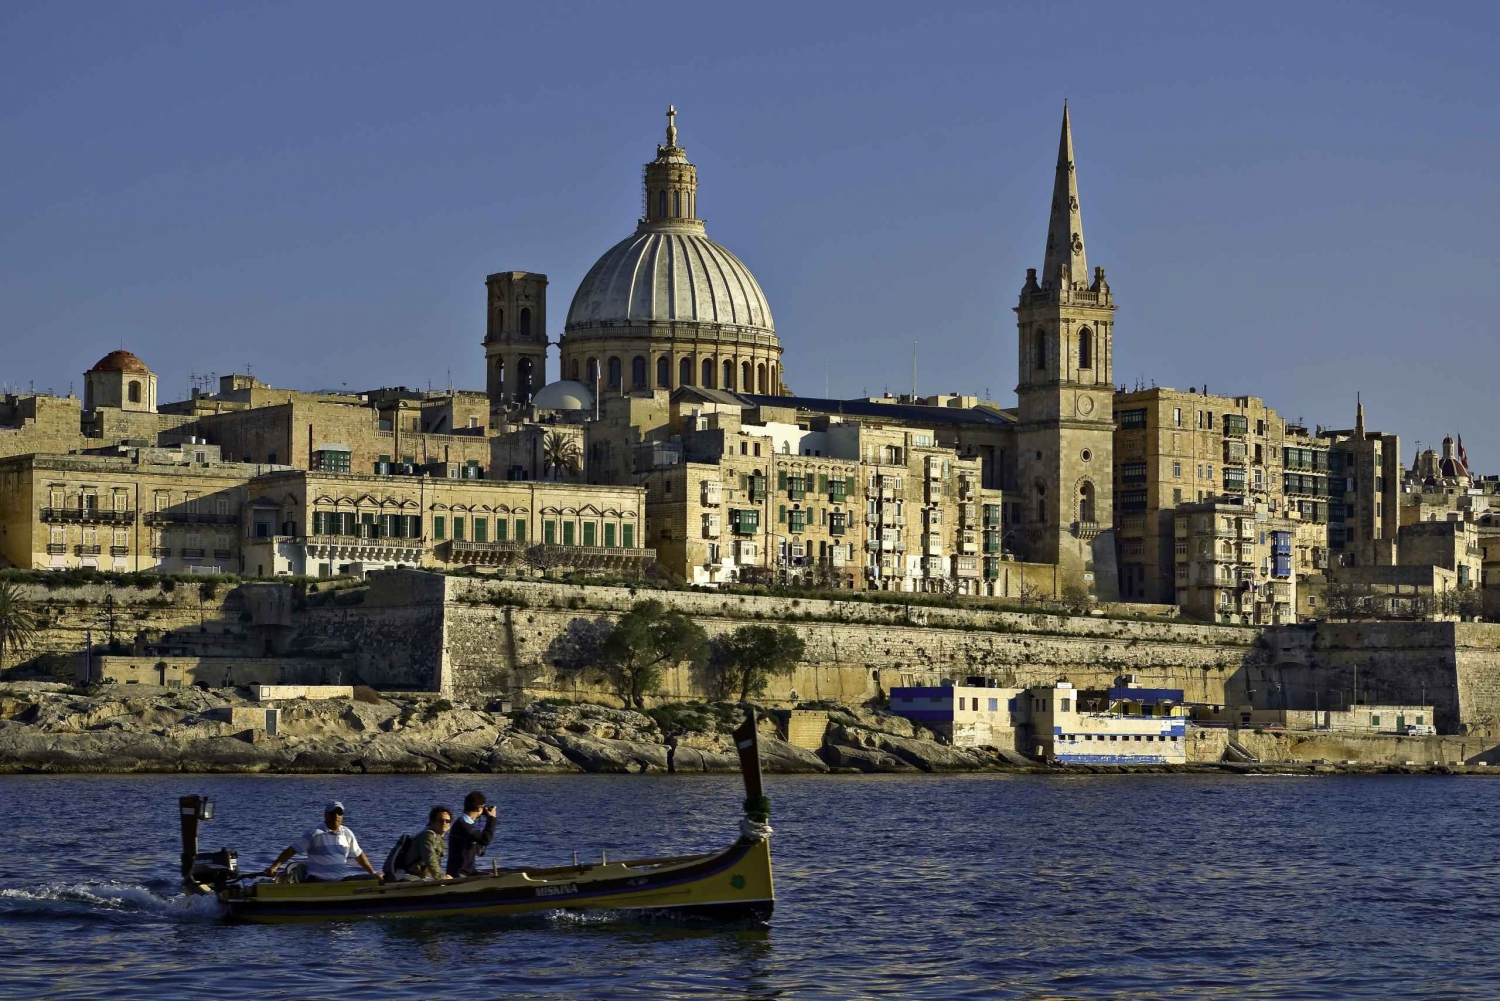 Explore The Island of Malta by private Chauffeur